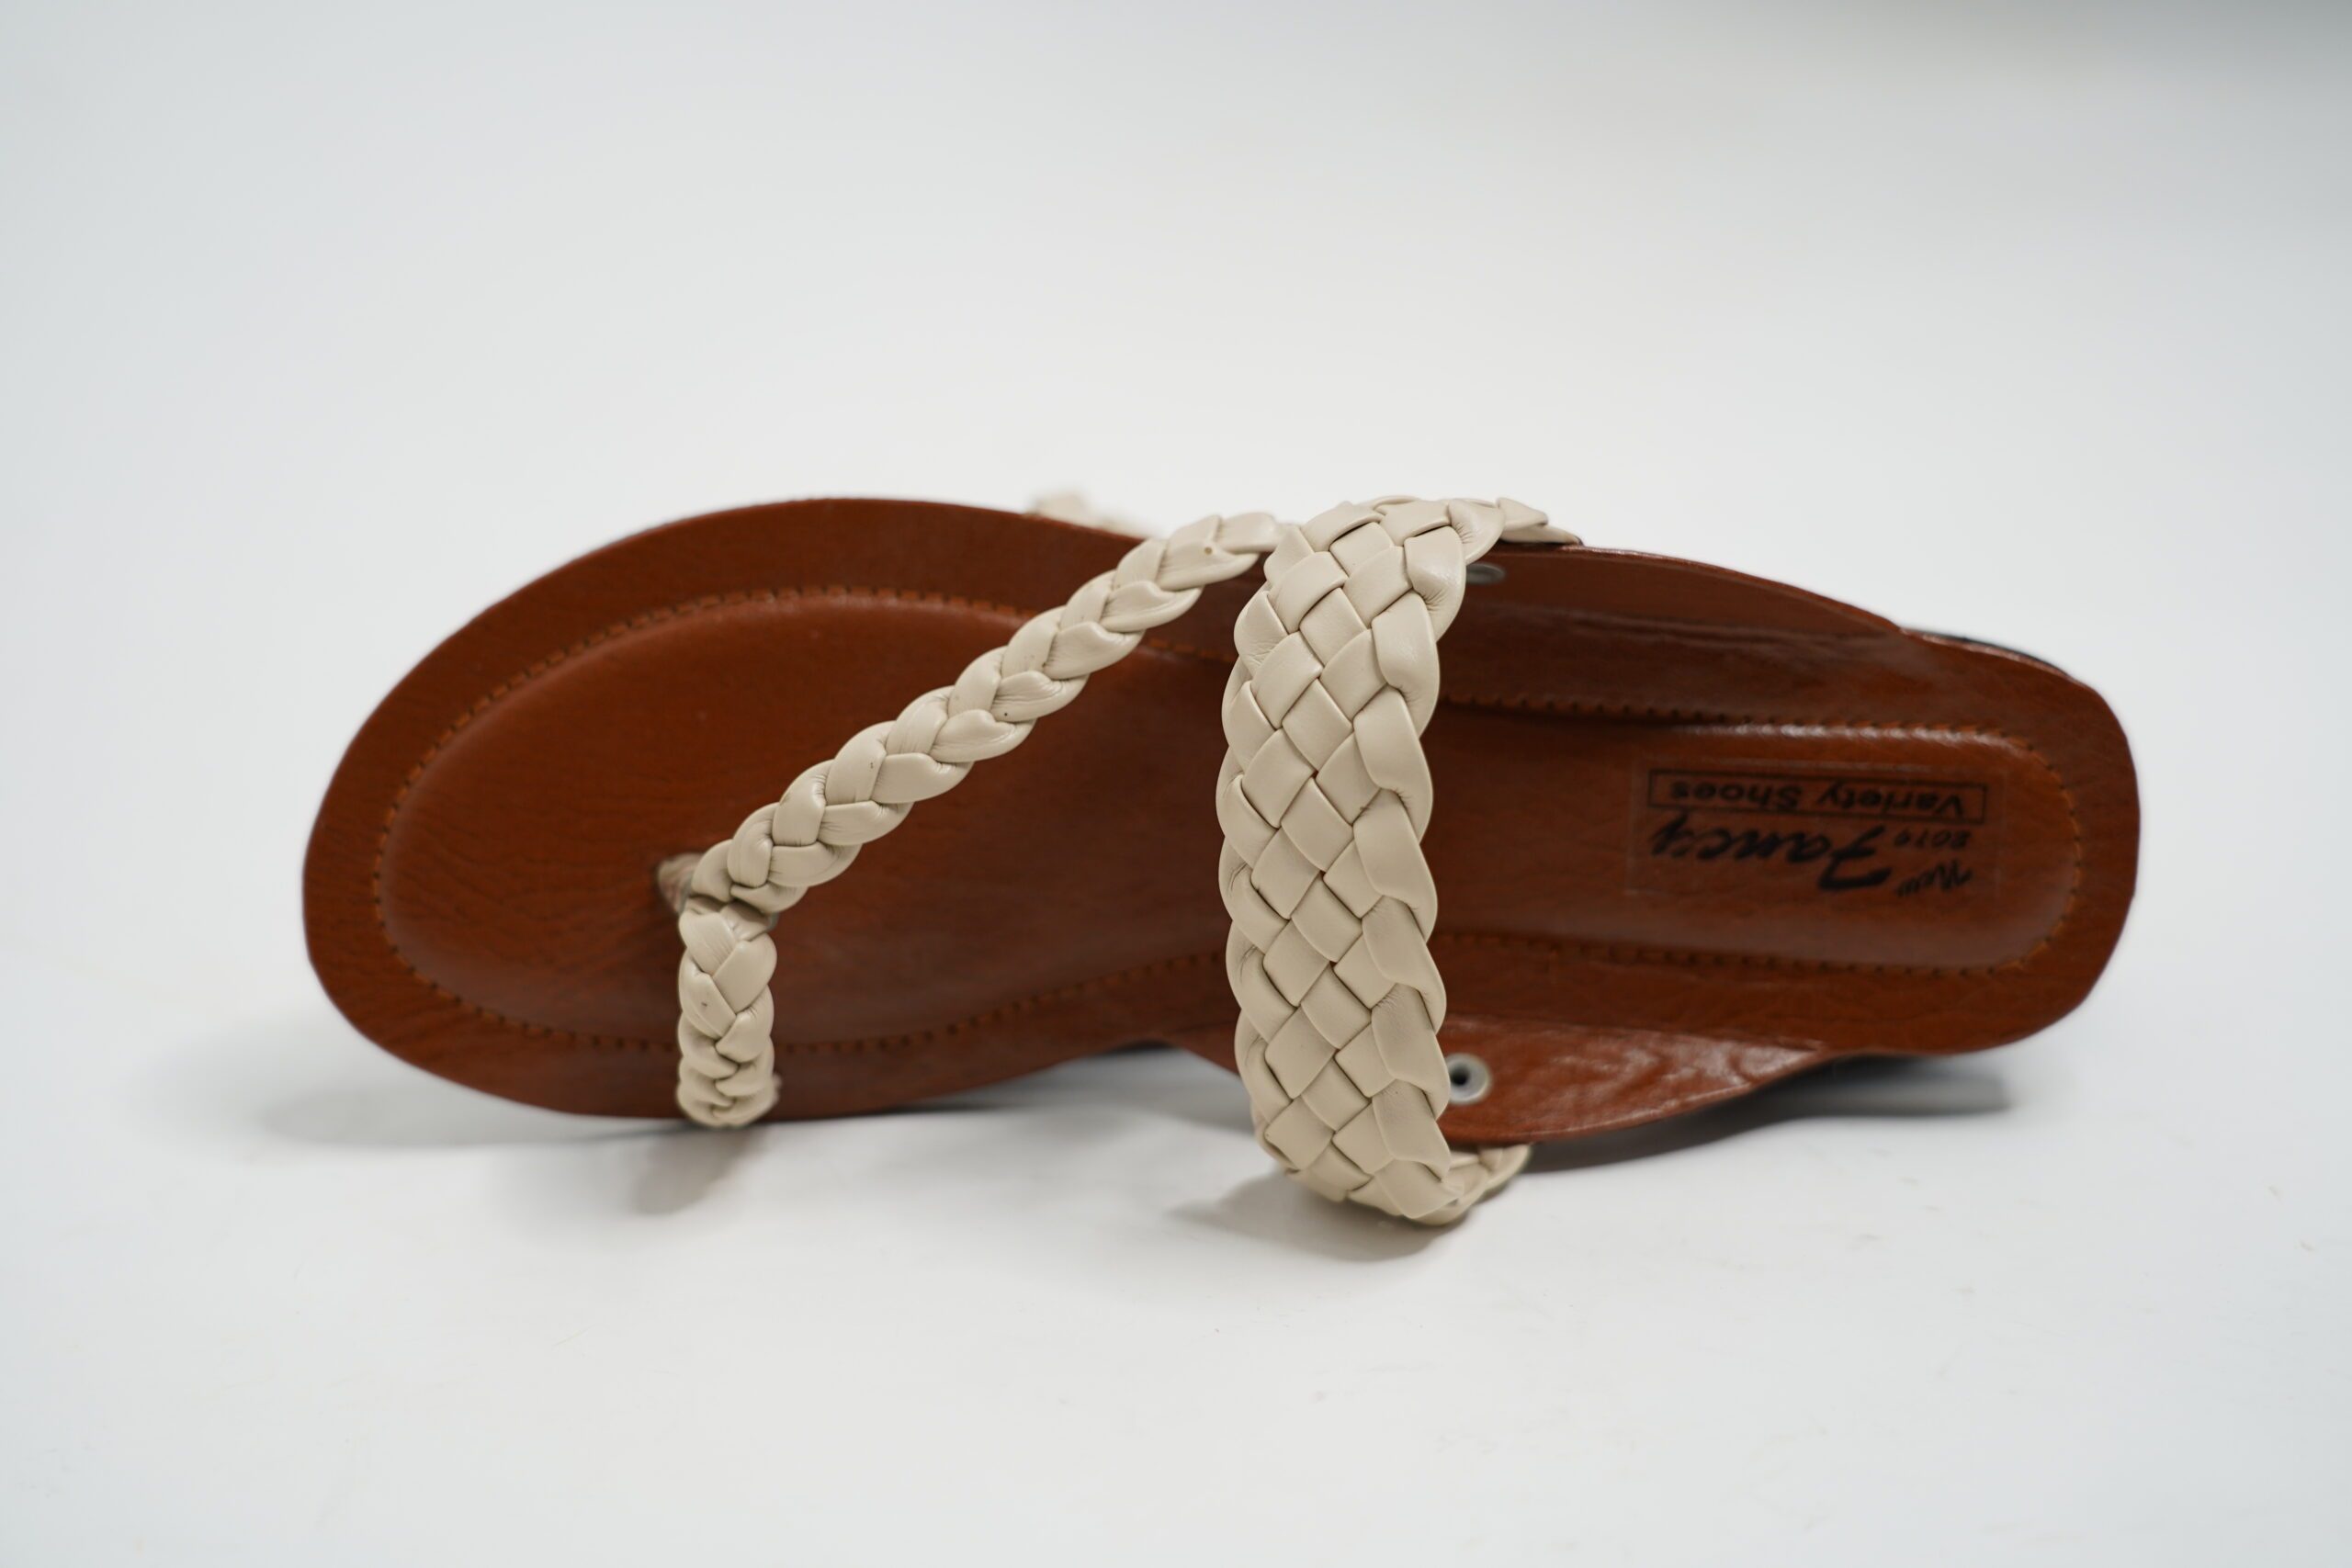 Fancy Thumb Flat Low Heel Slipper Shoes for Women In Pakistan